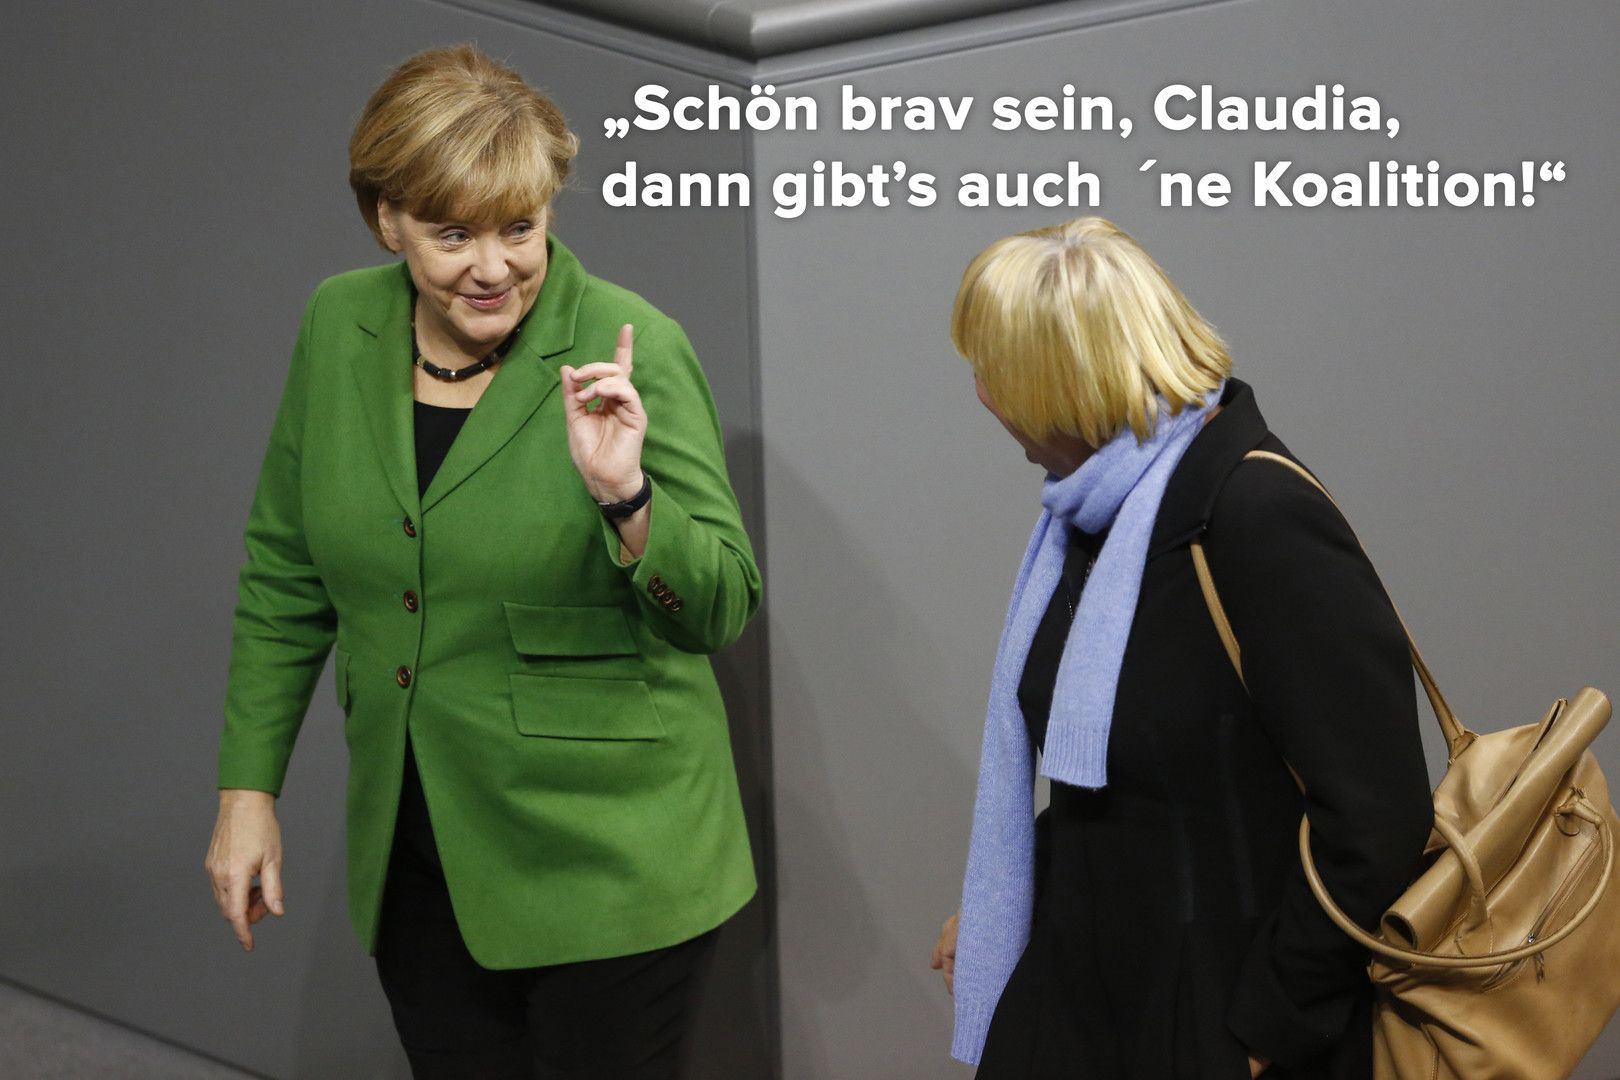 Grüne Machen Sich Über Fdp-Wahlplakate Lustig  Wahlplakate, Lustig innen Grünen Witze Bilder